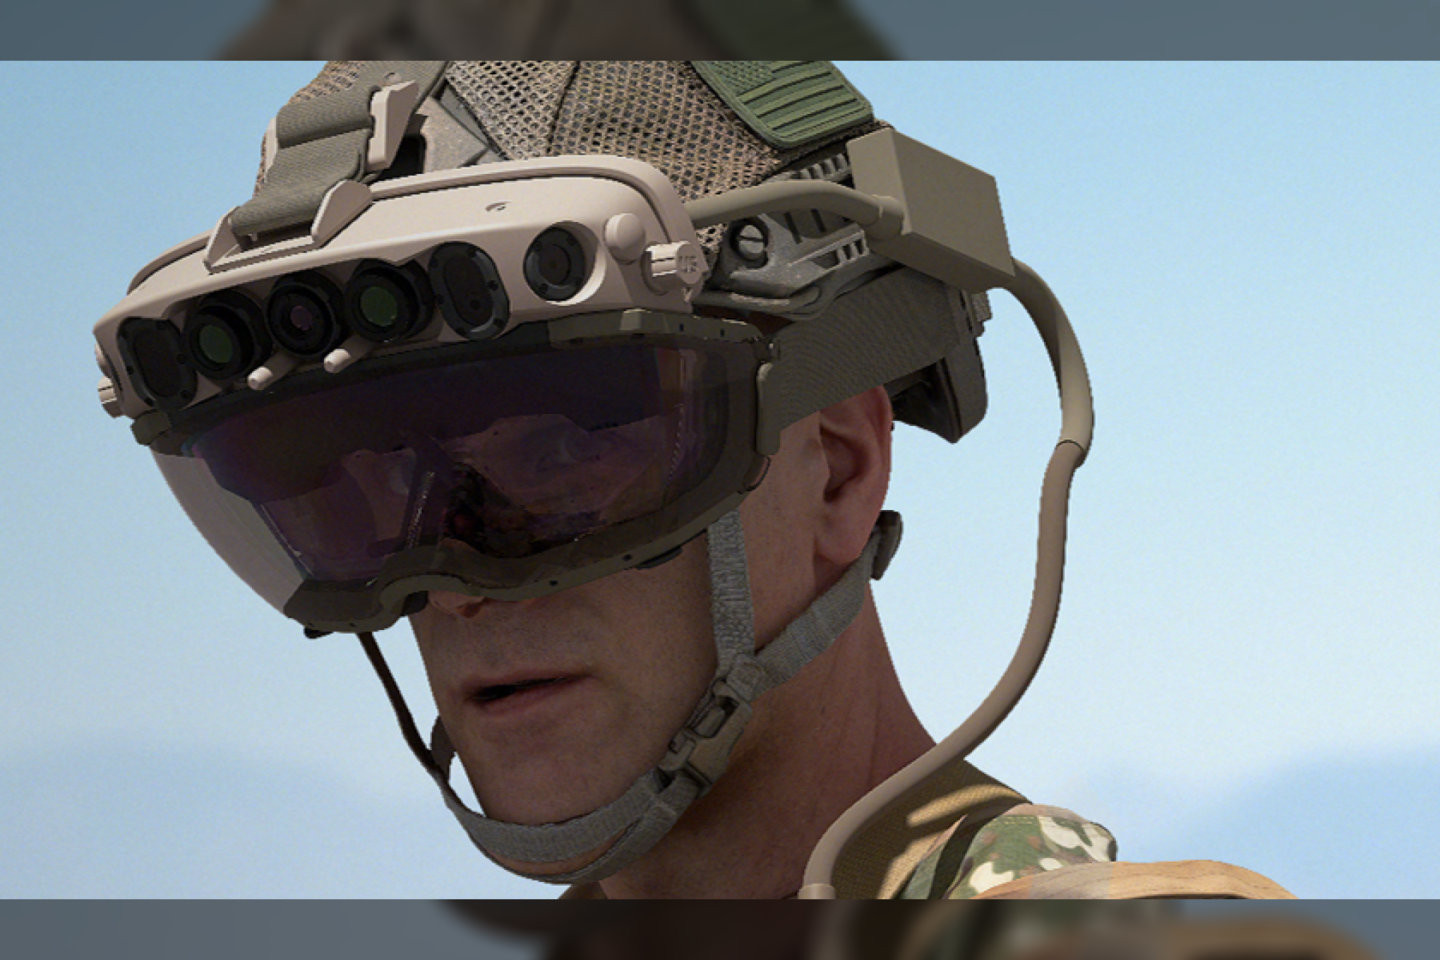  Įranga, pagrįsta jau sukurtomis „HoloLens“ technologijomis, padarys karius saugesniais ir leis jiems efektyviau atlikti užduotis.